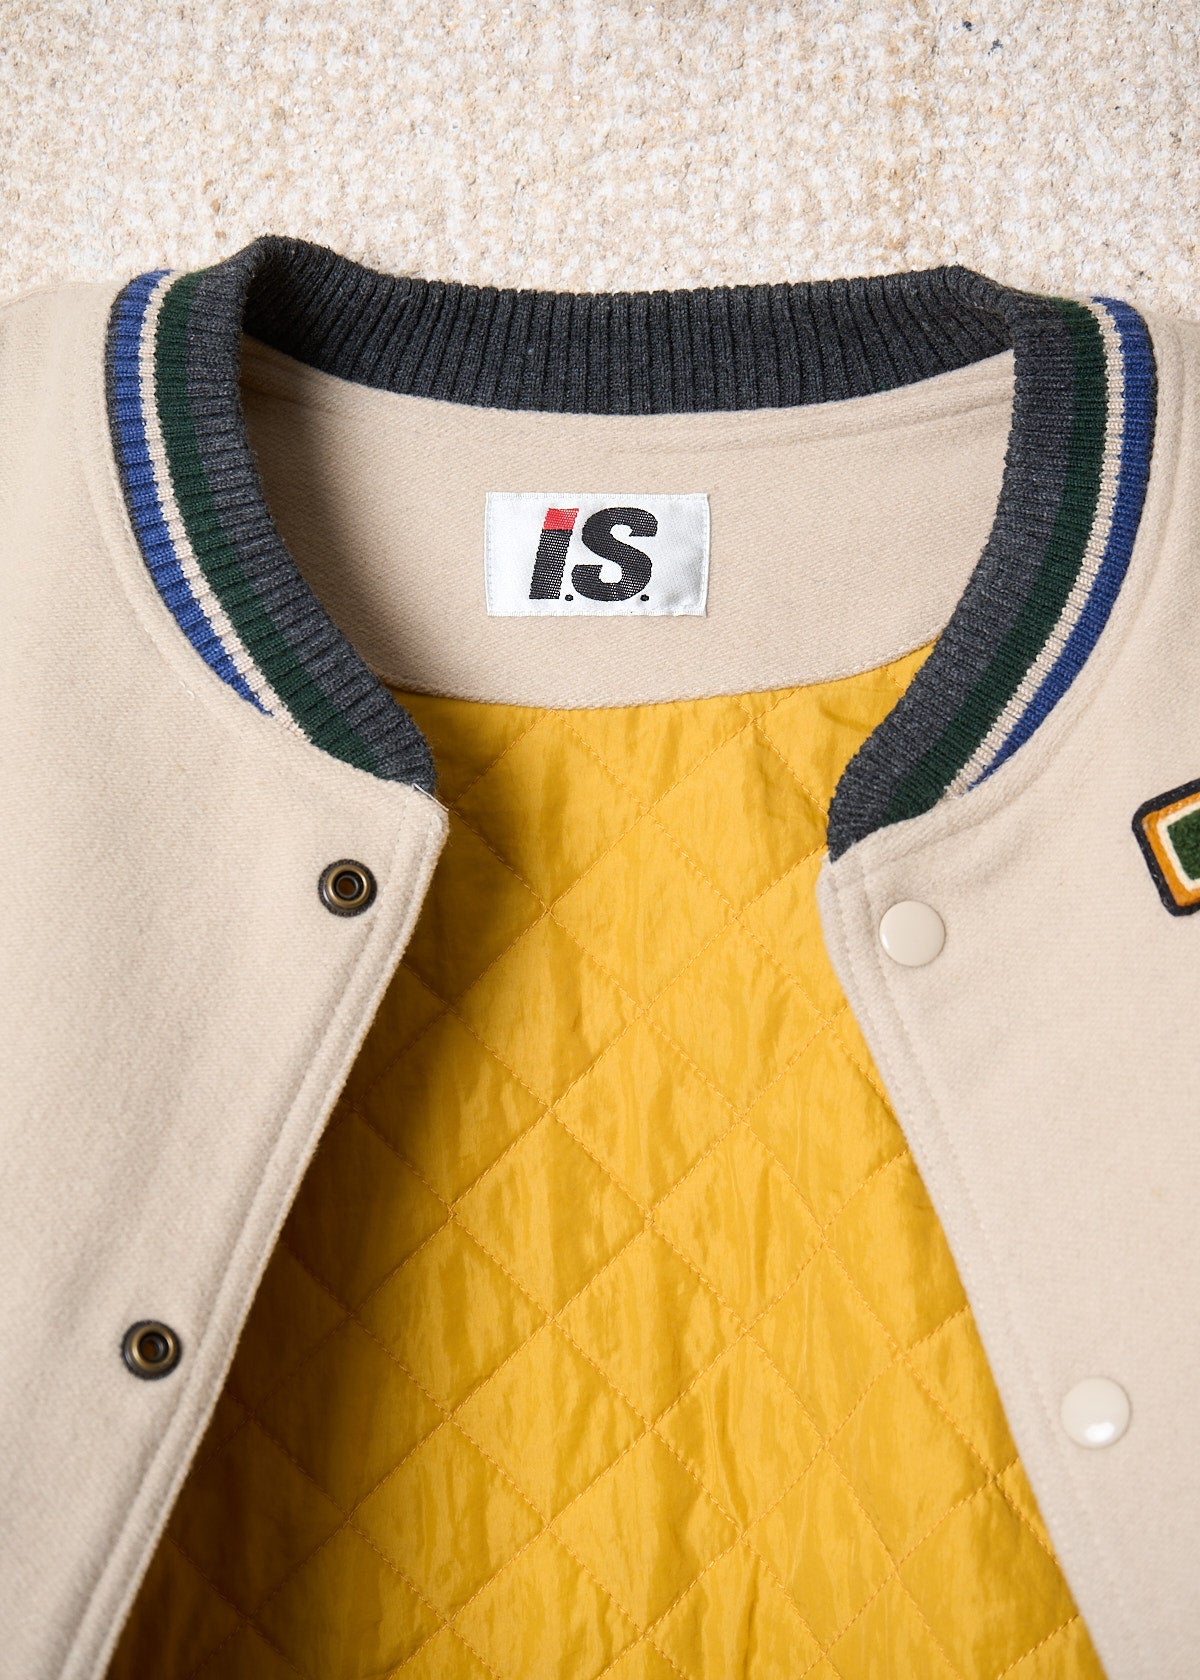 I.S. Team Flags Wool Varsity Jacket 1984 - Large